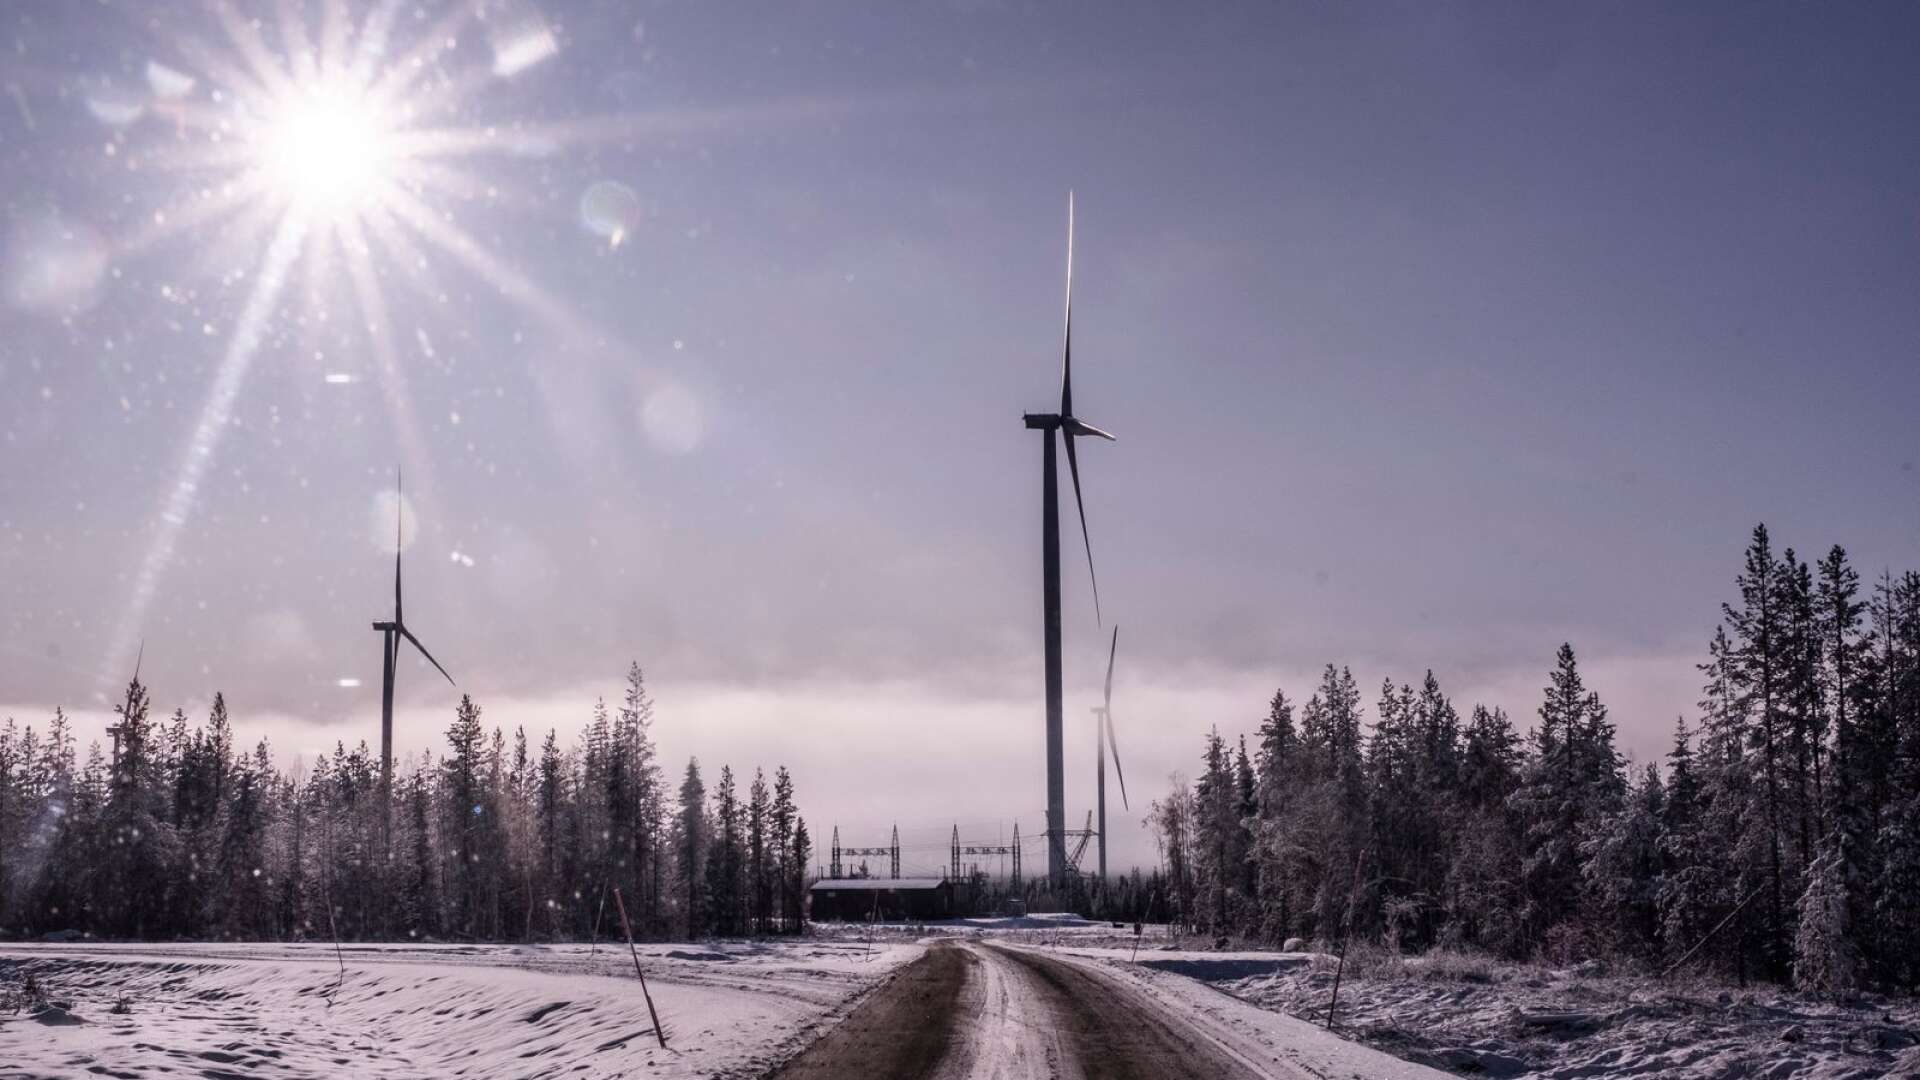 Vindkraften är snabb och billig att bygga ut, speciellt på land, skriver Agneta Andersson.